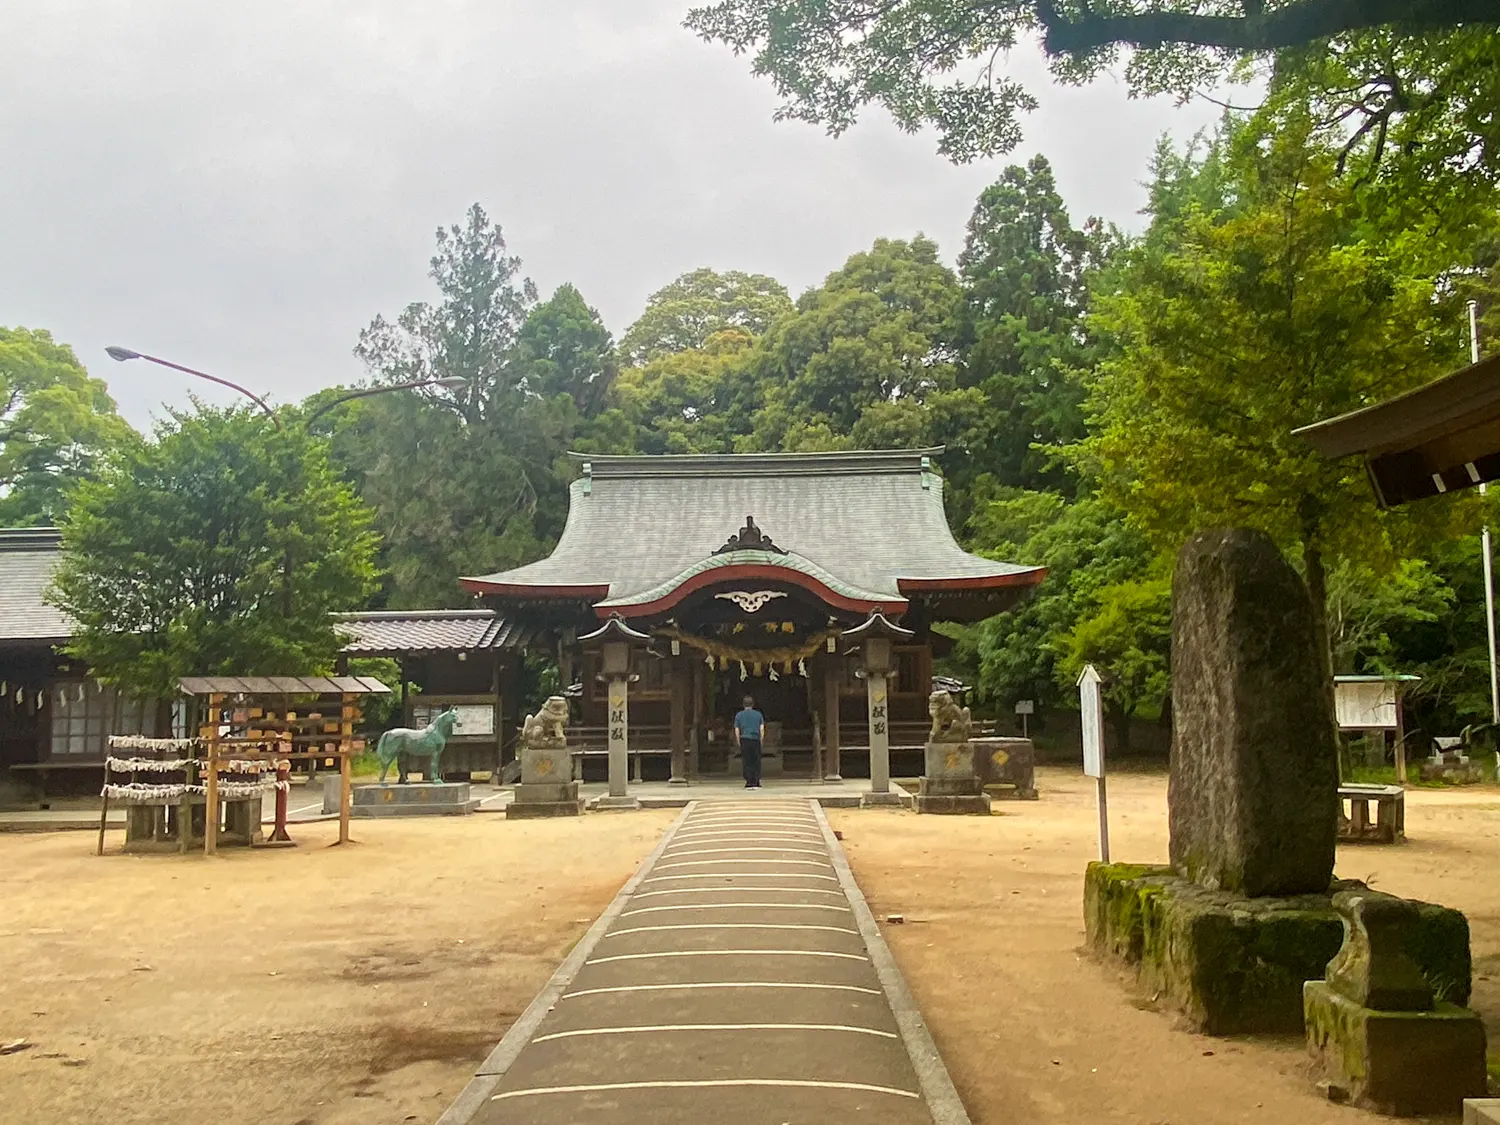 雨の日でもキレイな神社 筑紫神社5